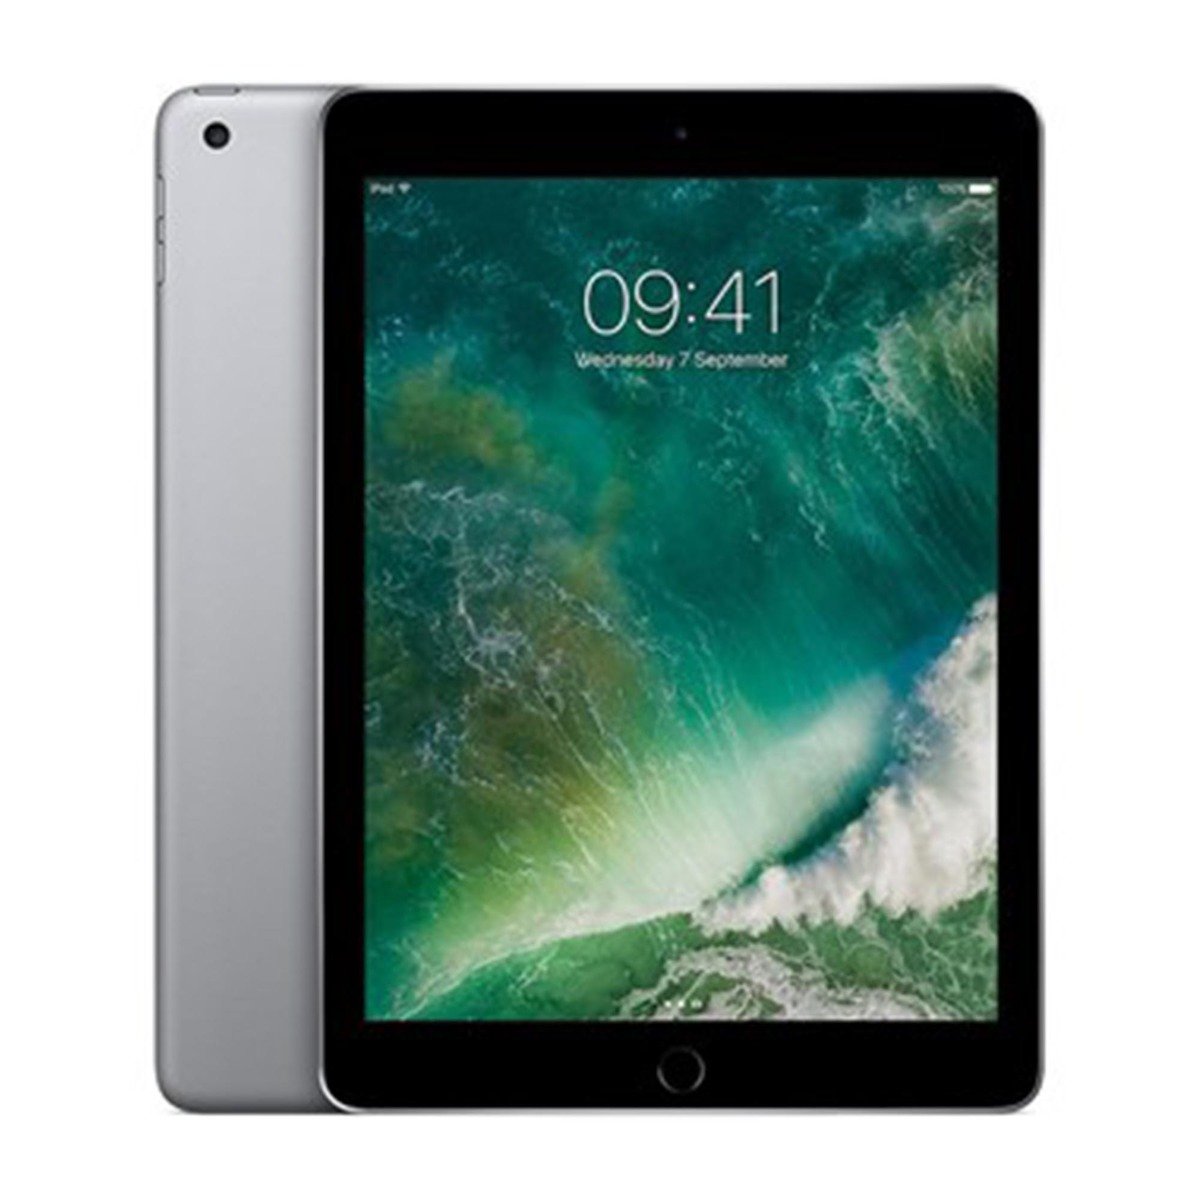 Apple iPad-6th Generation 9.7inchWifi 32GB Space Grey